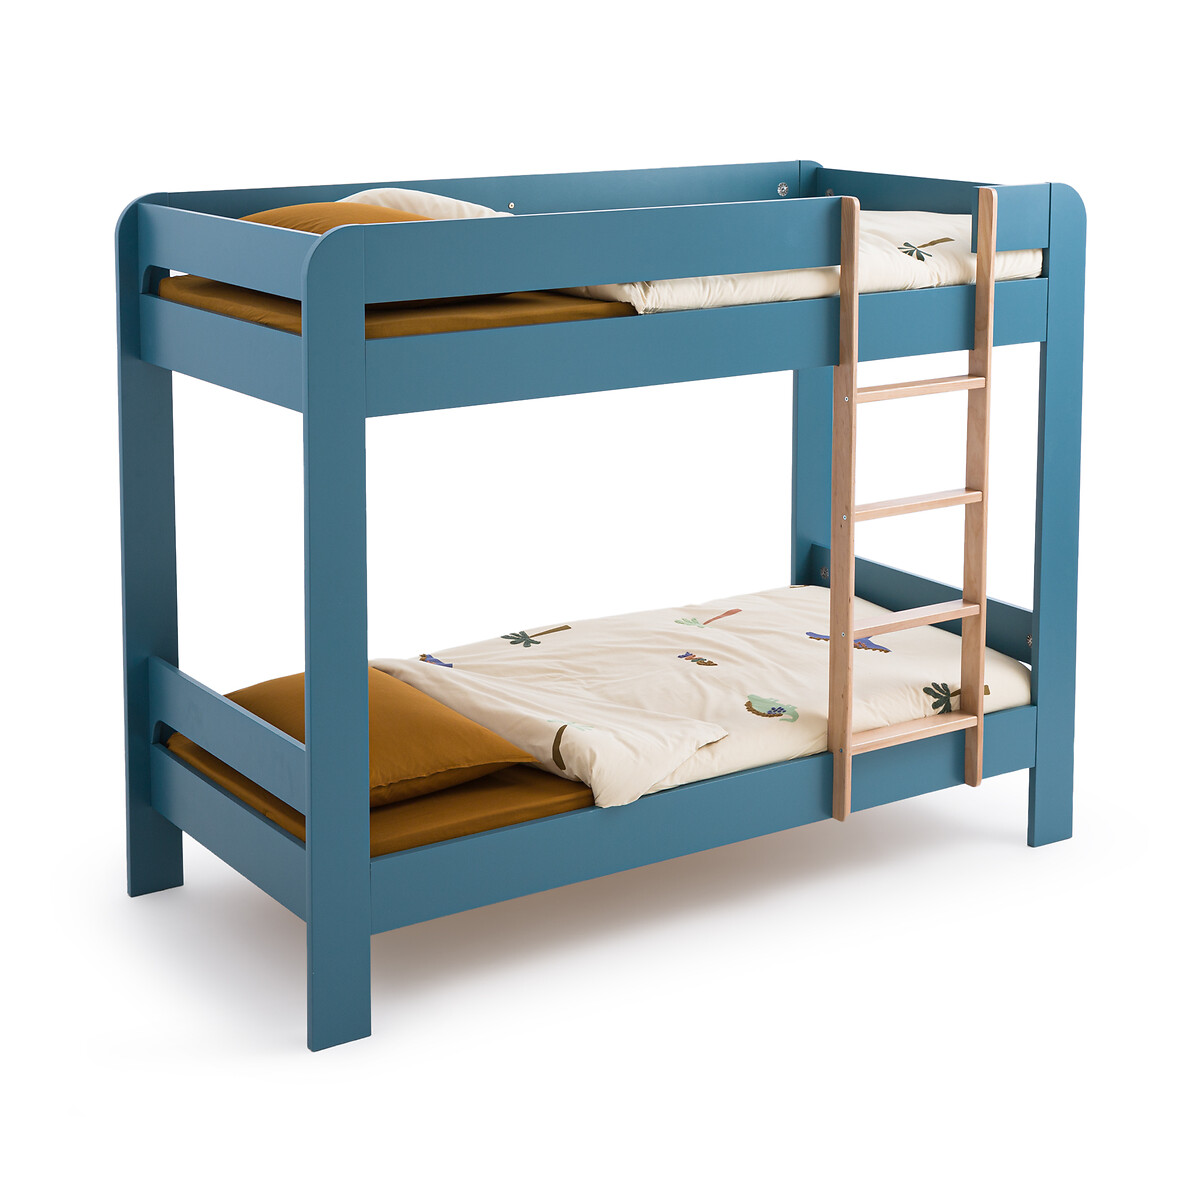 Кровать двухъярусная Tempo 90 x 190 см синий двухъярусная кровать из шпона дуба с пружинным блоком alceste 90 x 190 см каштановый